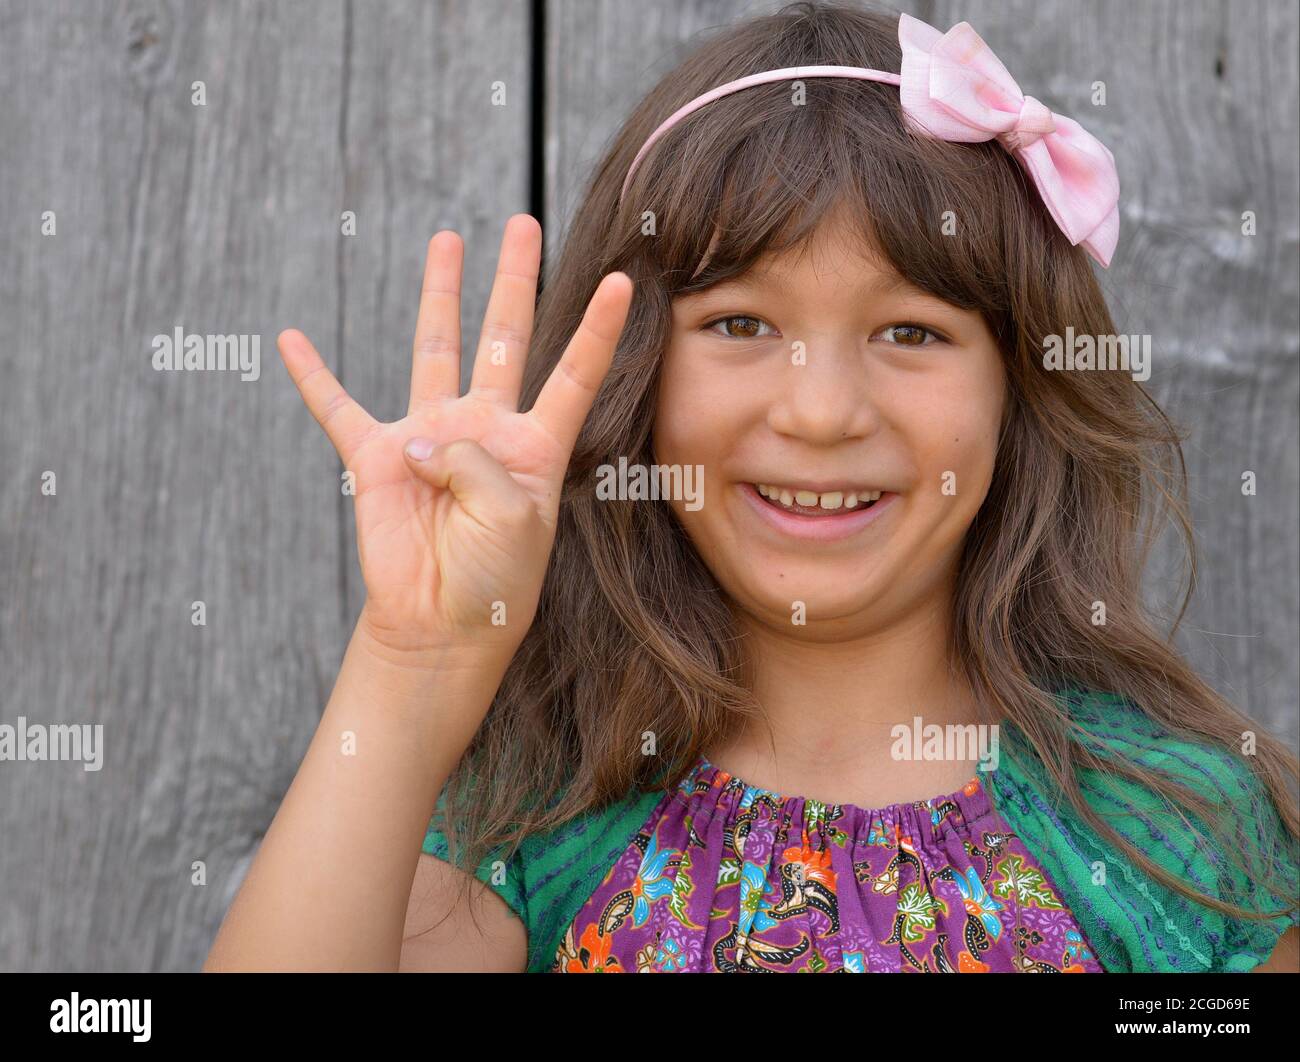 Mignon mixte-race petite fille (est asiatique / caucasien) montre avec sa main droite le signe de la main chinoise pour le numéro 4 (photo série: Image no. 4 de 10). Banque D'Images